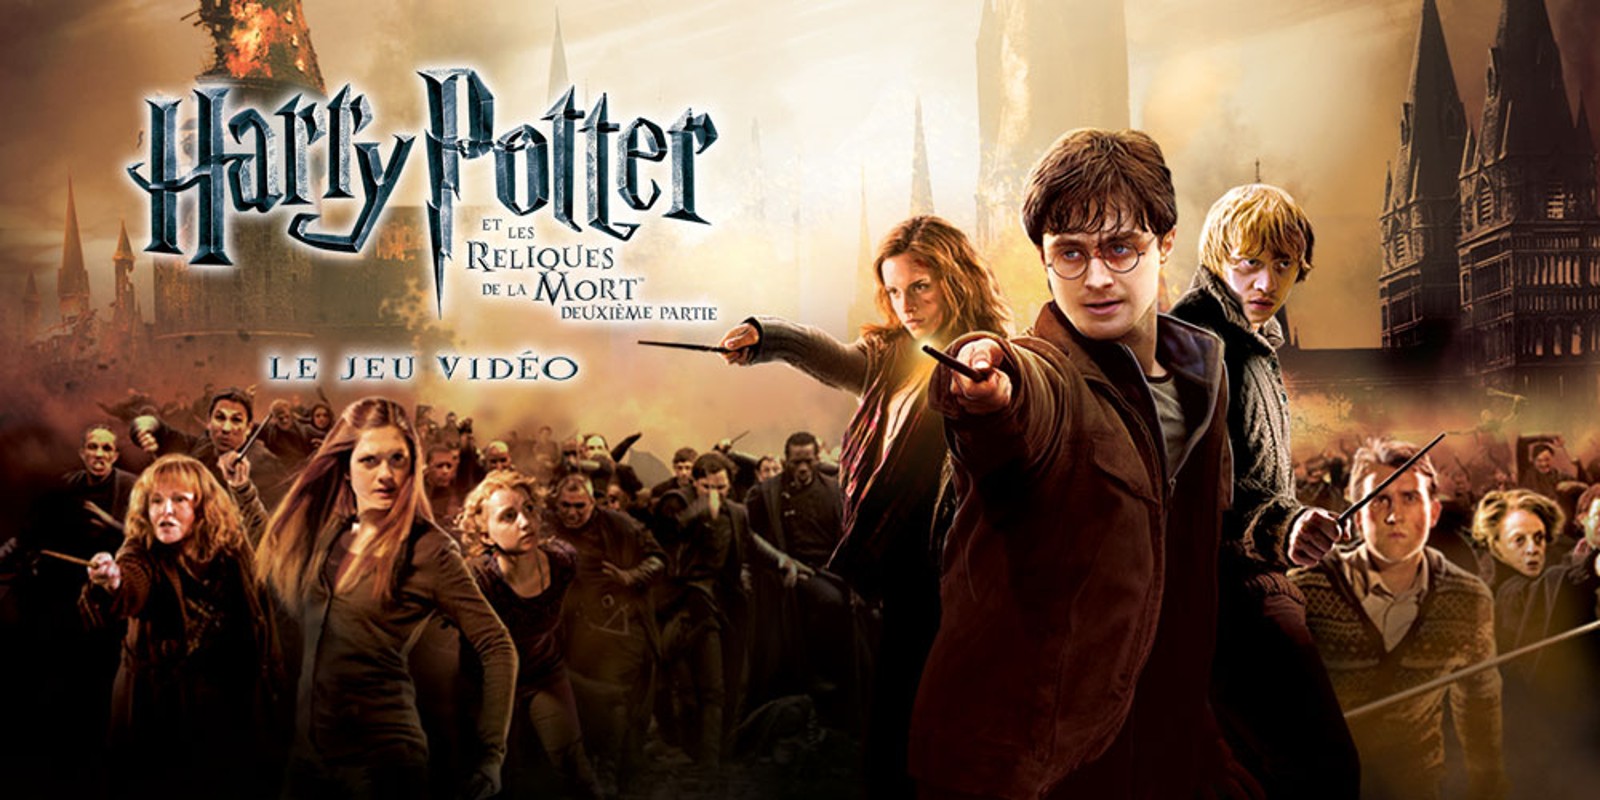 Harry Potter et les Reliques de la Mort™ - Deuxième Partie